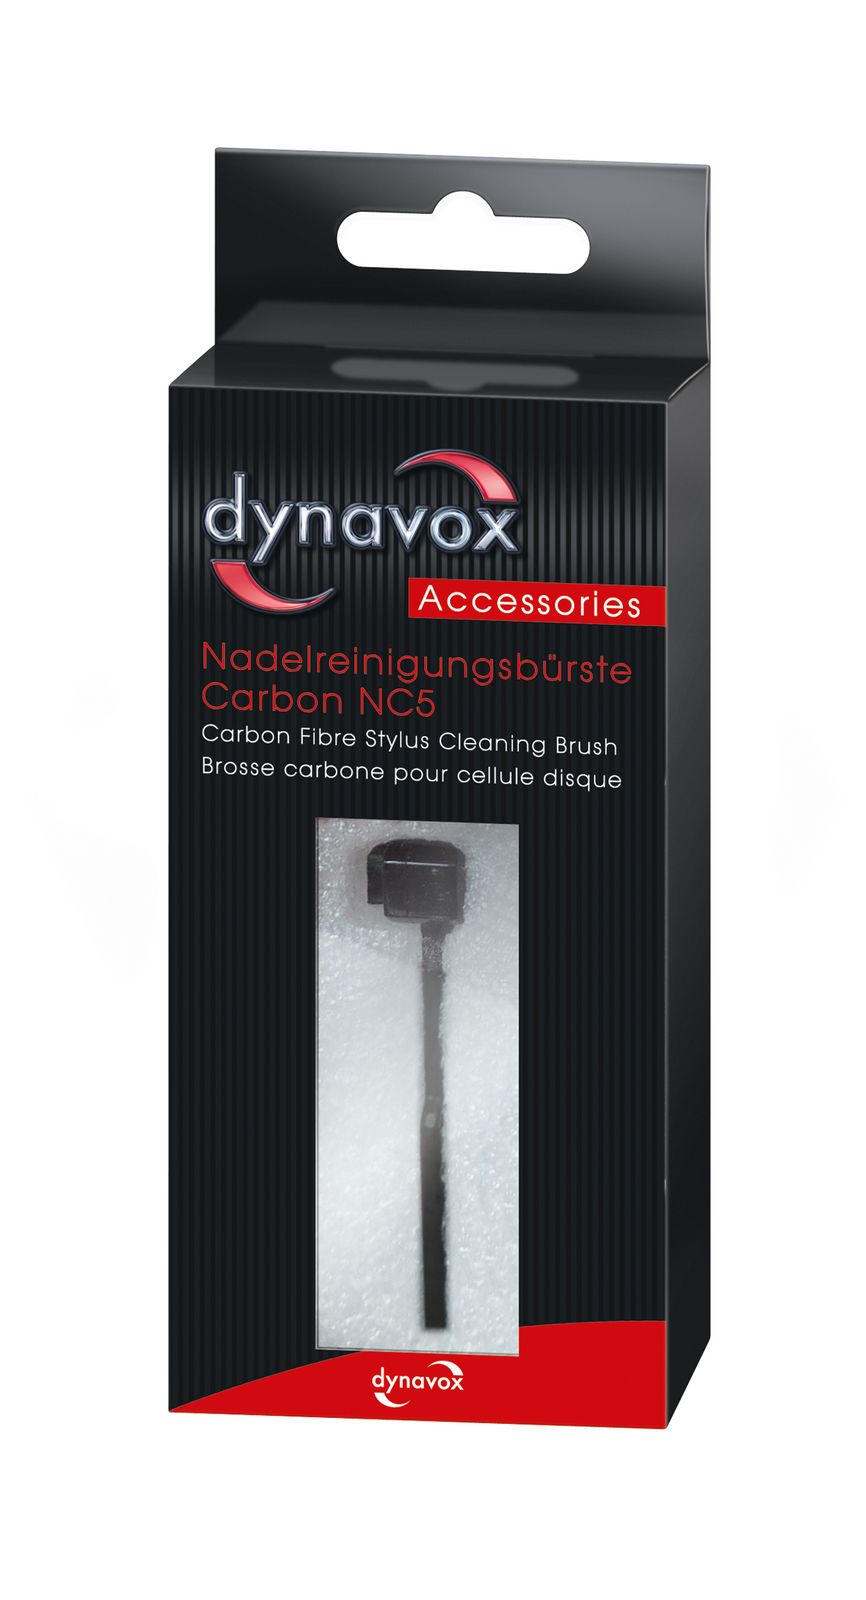 Dynavox NC5 Carbon Nadelreinigungsbürste pflegt und reinigt schonend-/bilder/big/207520_3.jpg